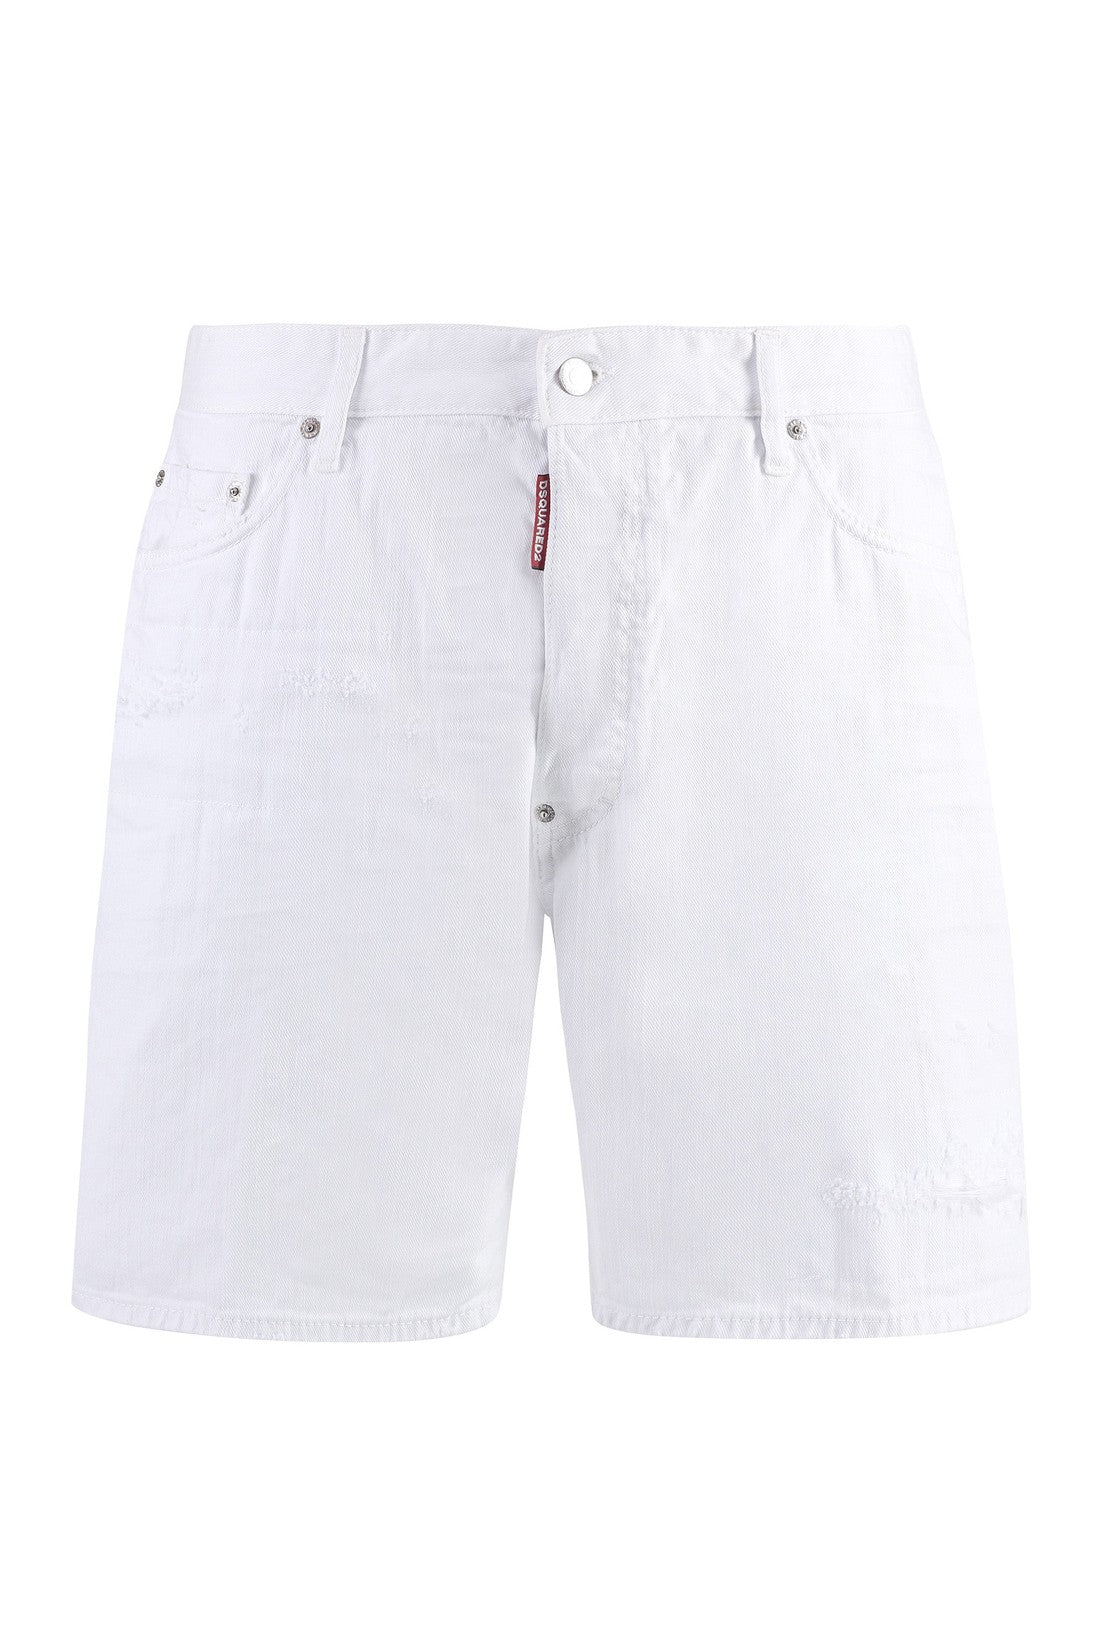 Dsquared2-OUTLET-SALE-Cotton bermuda shorts-ARCHIVIST